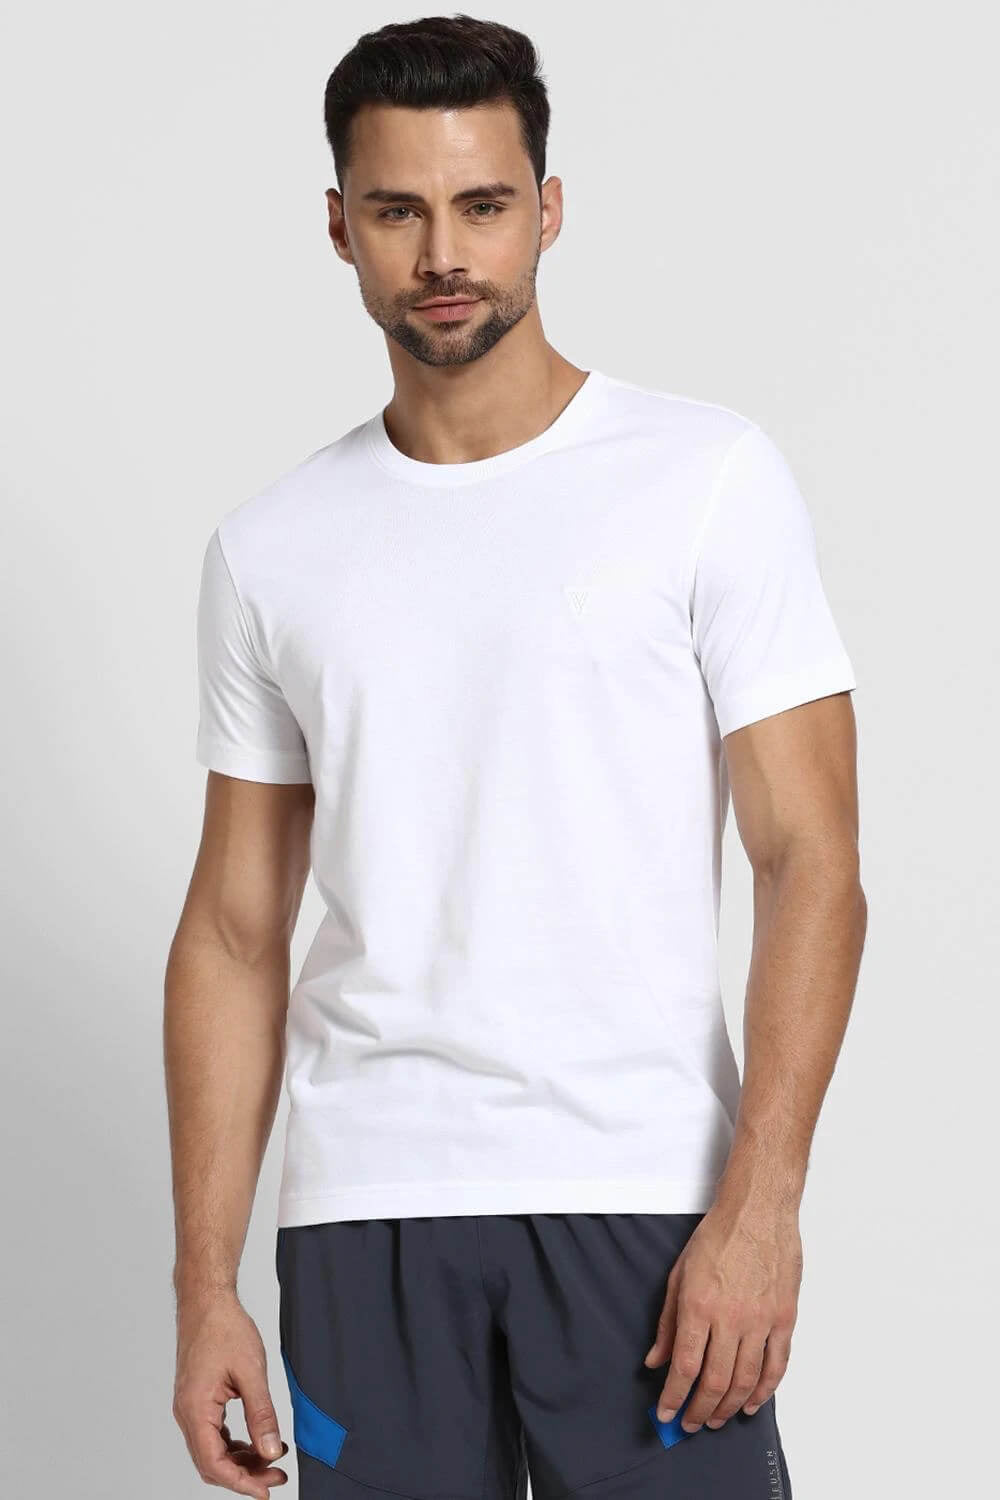 Van Heusen White Tshirt for Men #60034